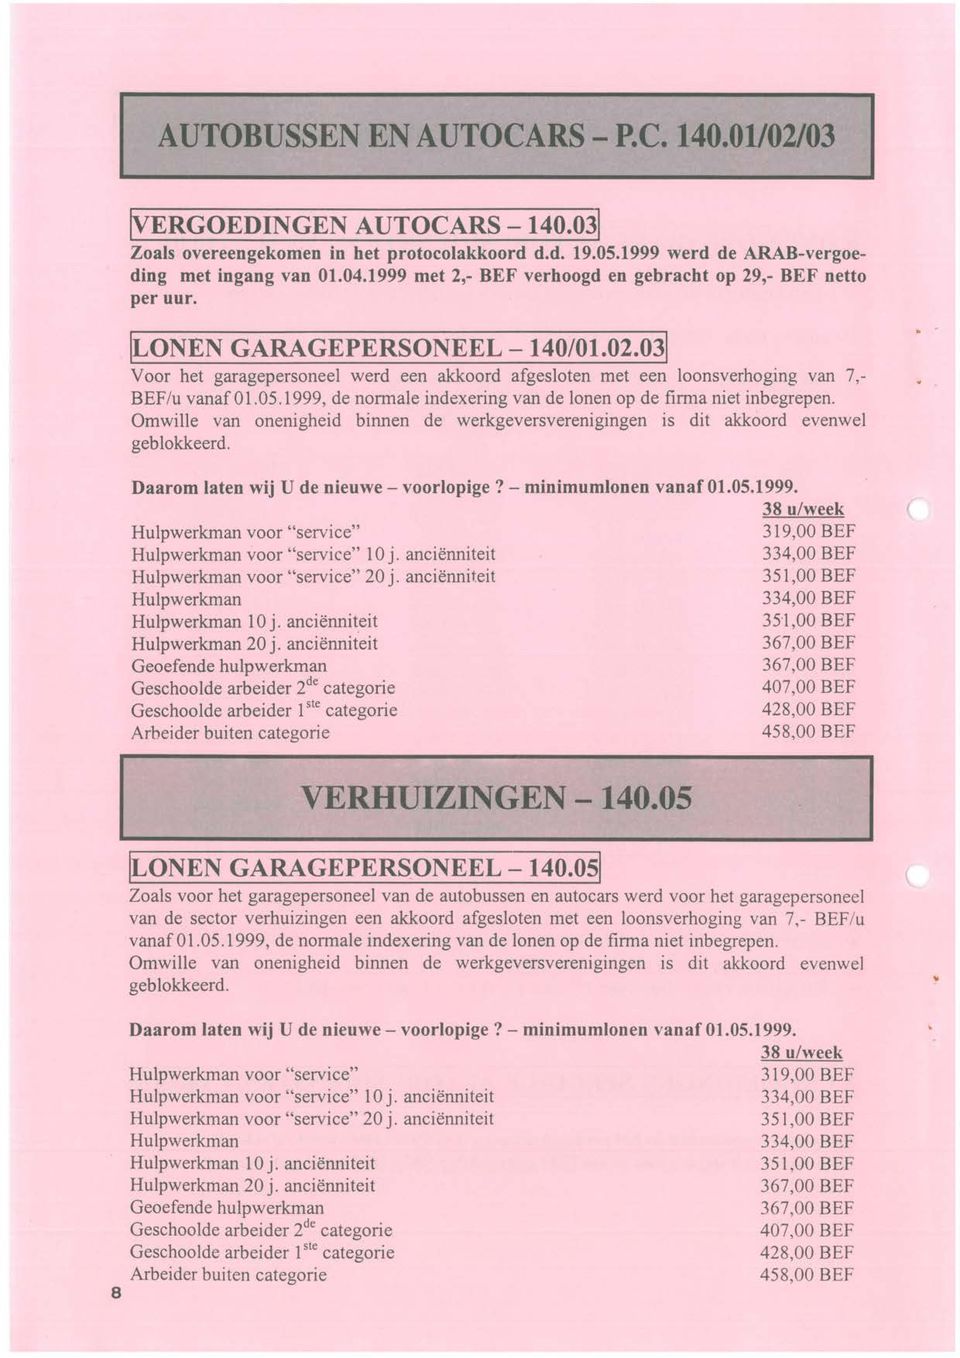 031 Voor het garagepersoneel werd een akkoord afgesloten met een loonsverhoging van 7, BEF Iu vanaf 01.05.1999, de normale indexering van de lonen op de firma niet inbegrepen.